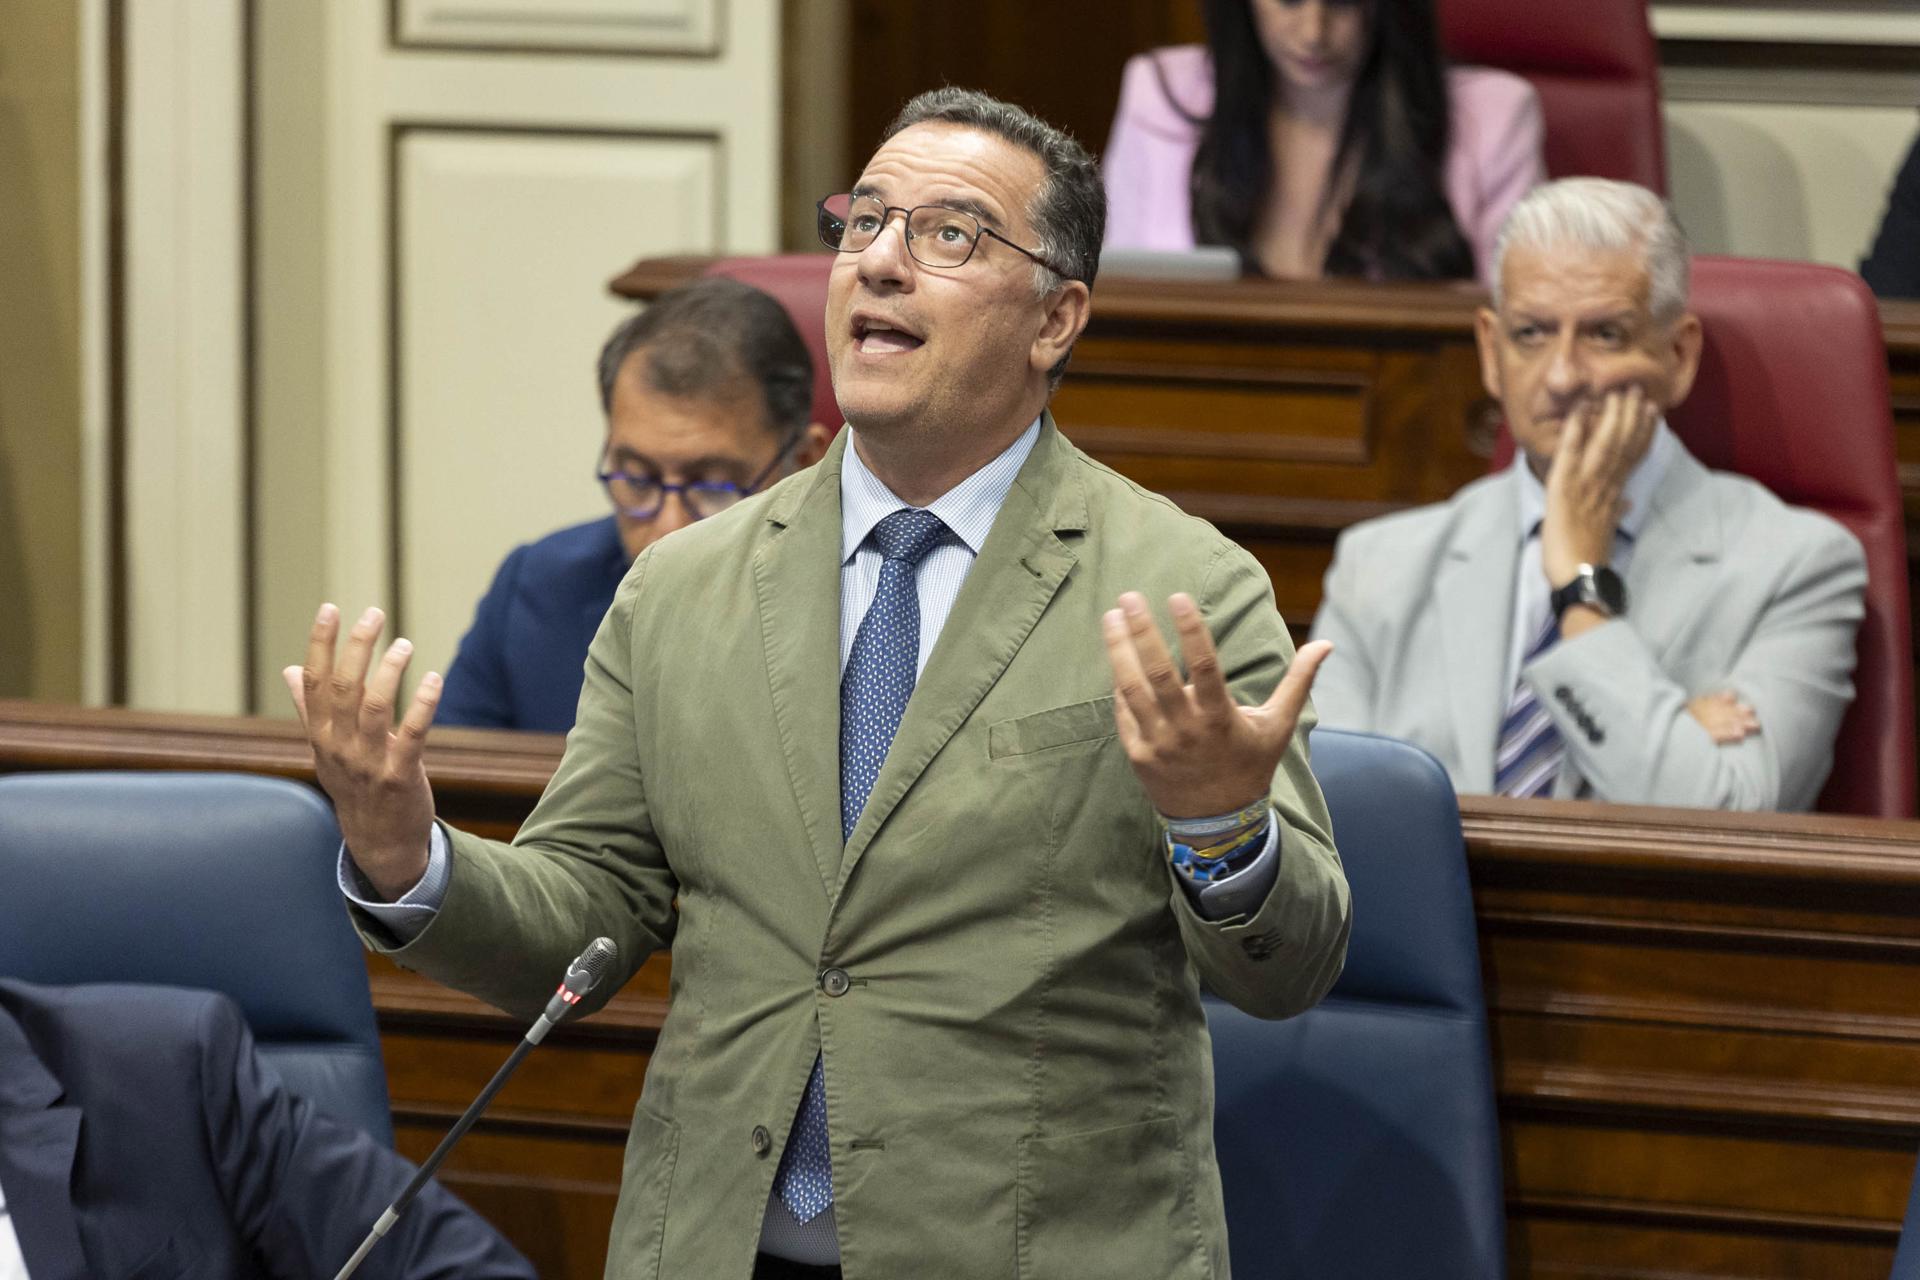 El consejero de Educación, Formación Profesional, Actividad Física y Deportes, Hipólito Suárez, durante su intervención en el Pleno del Parlamento de Canarias. EFE/Miguel Barreto